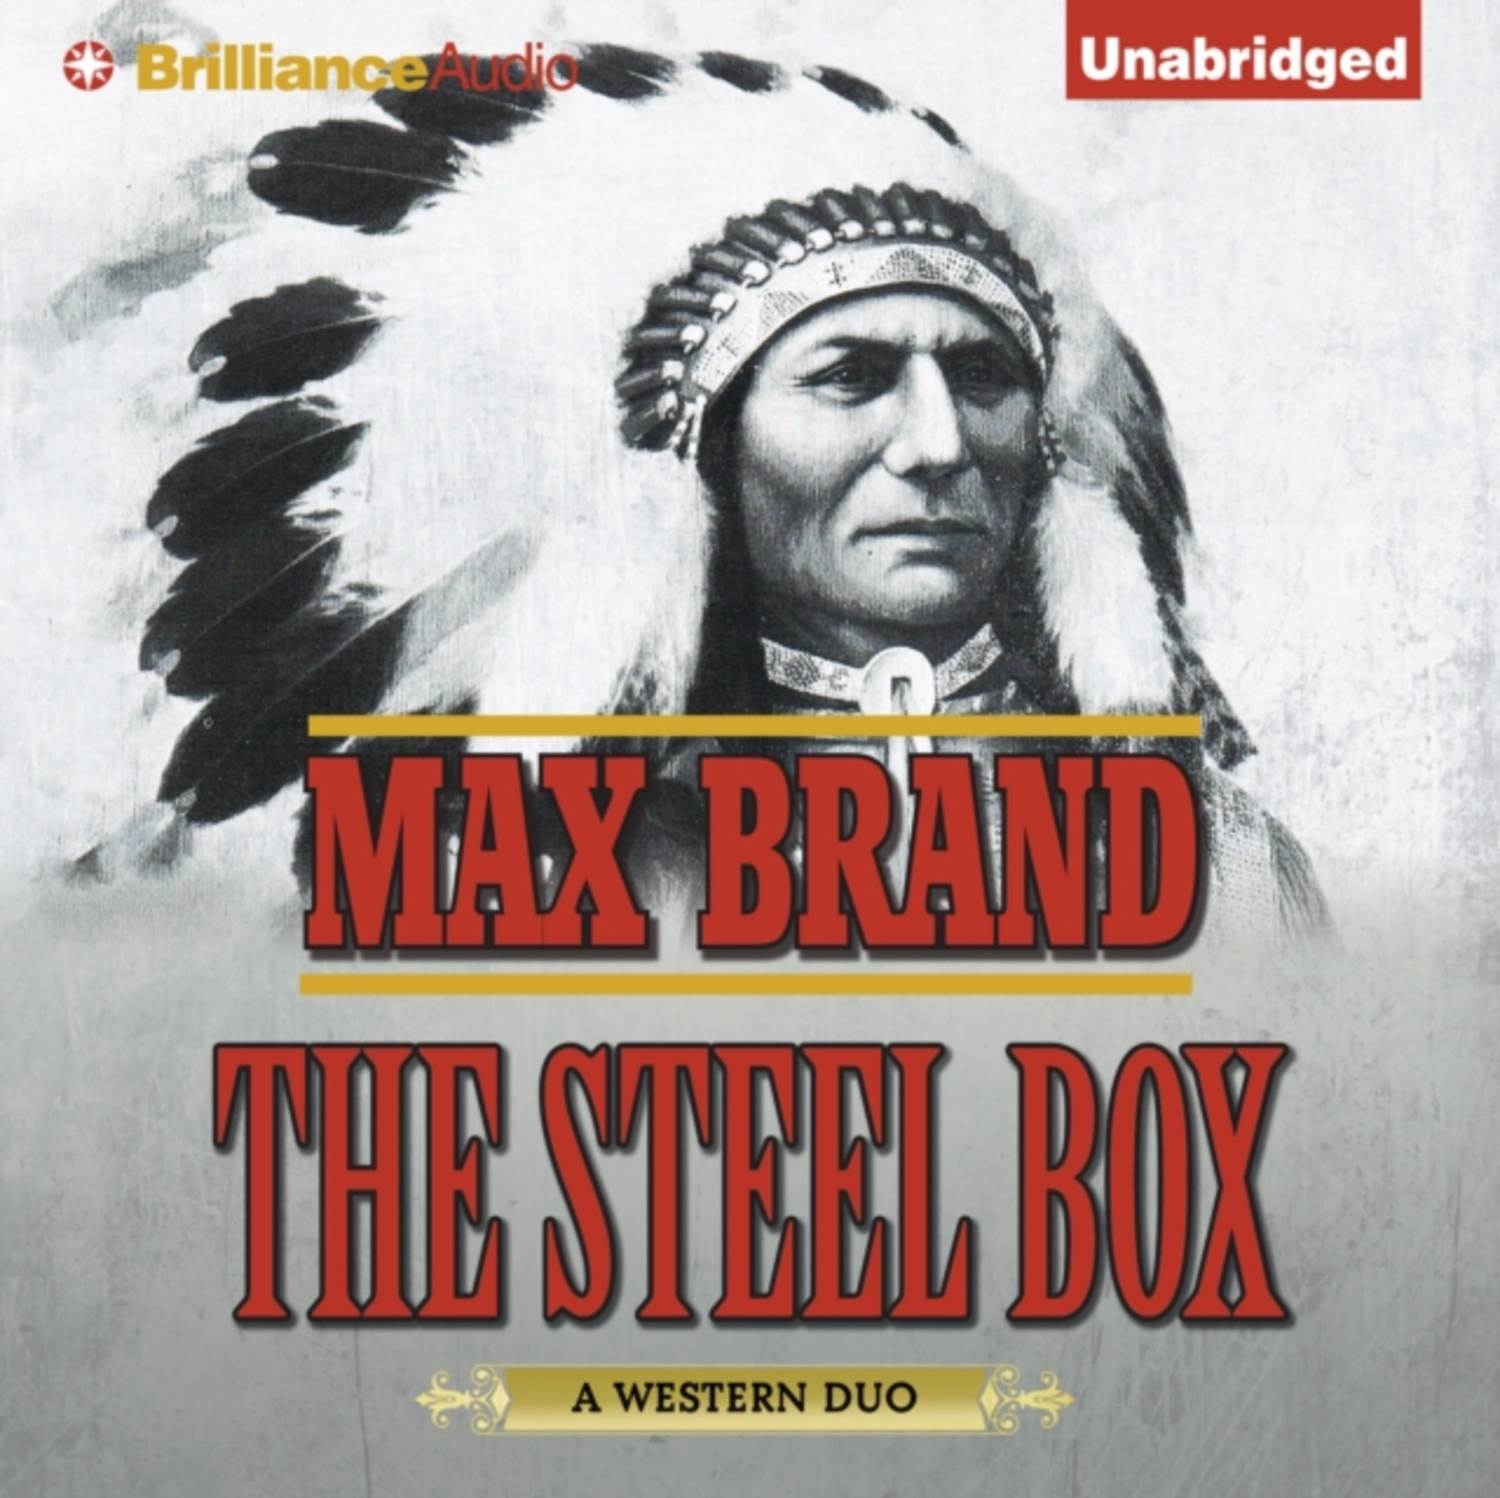 Max Box. Сталь и серебро аудиокнига.